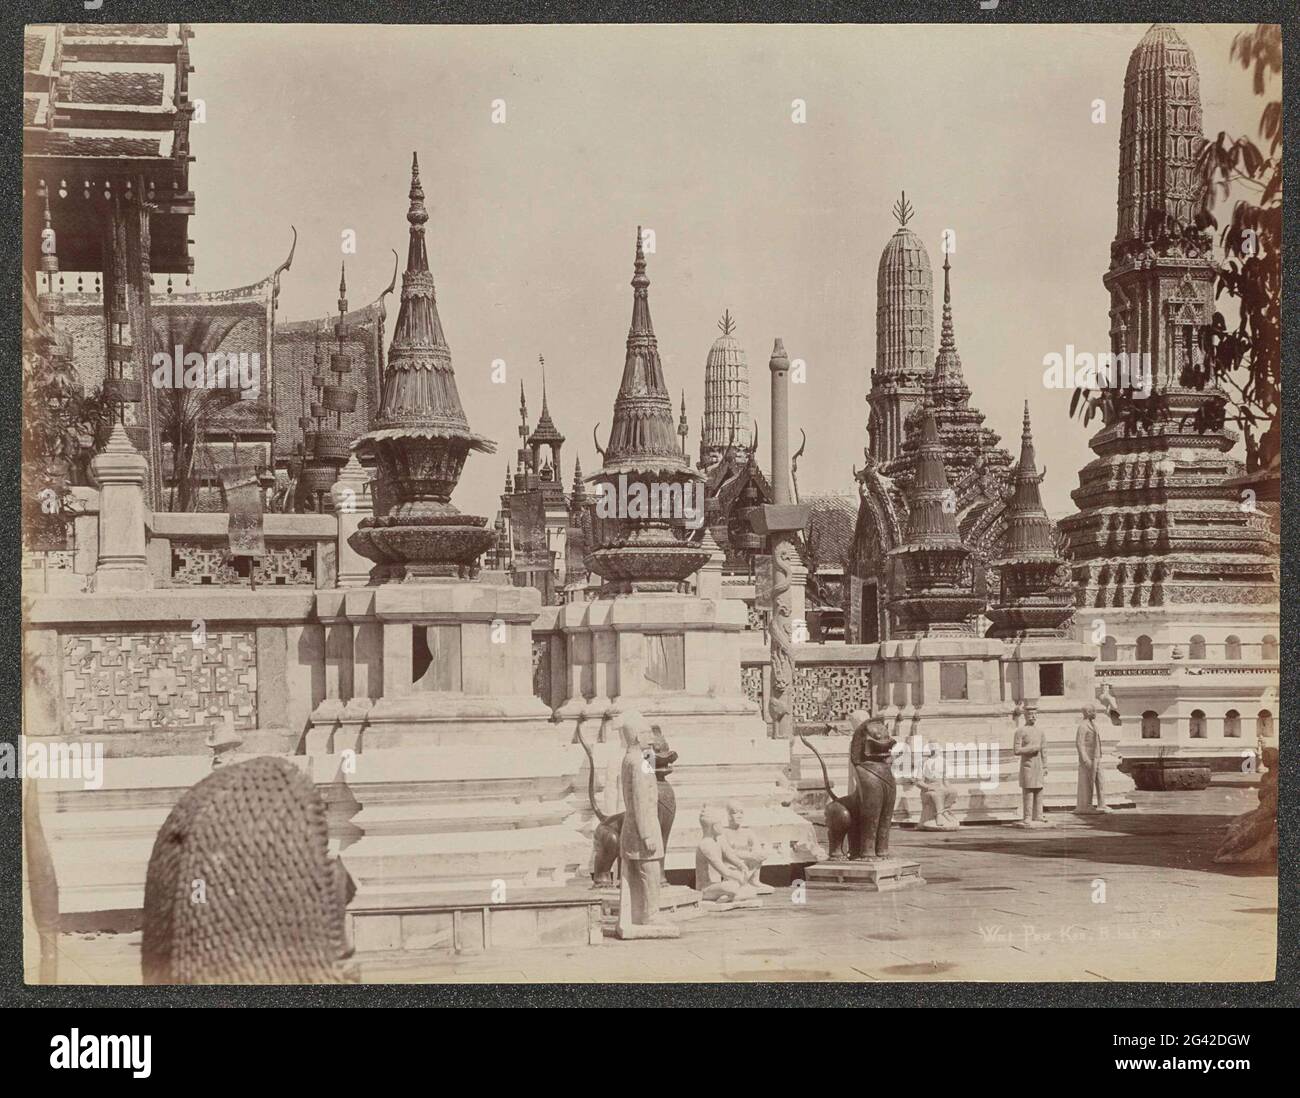 Tempelkomplex von Wat Phra Keo (Tempel des emeraldgroene Buddha) in Bangkok; What Pra Keo, B.Kok. Teil des Albums mit 50 Fotos einer Reise durch Südostasien. Stockfoto